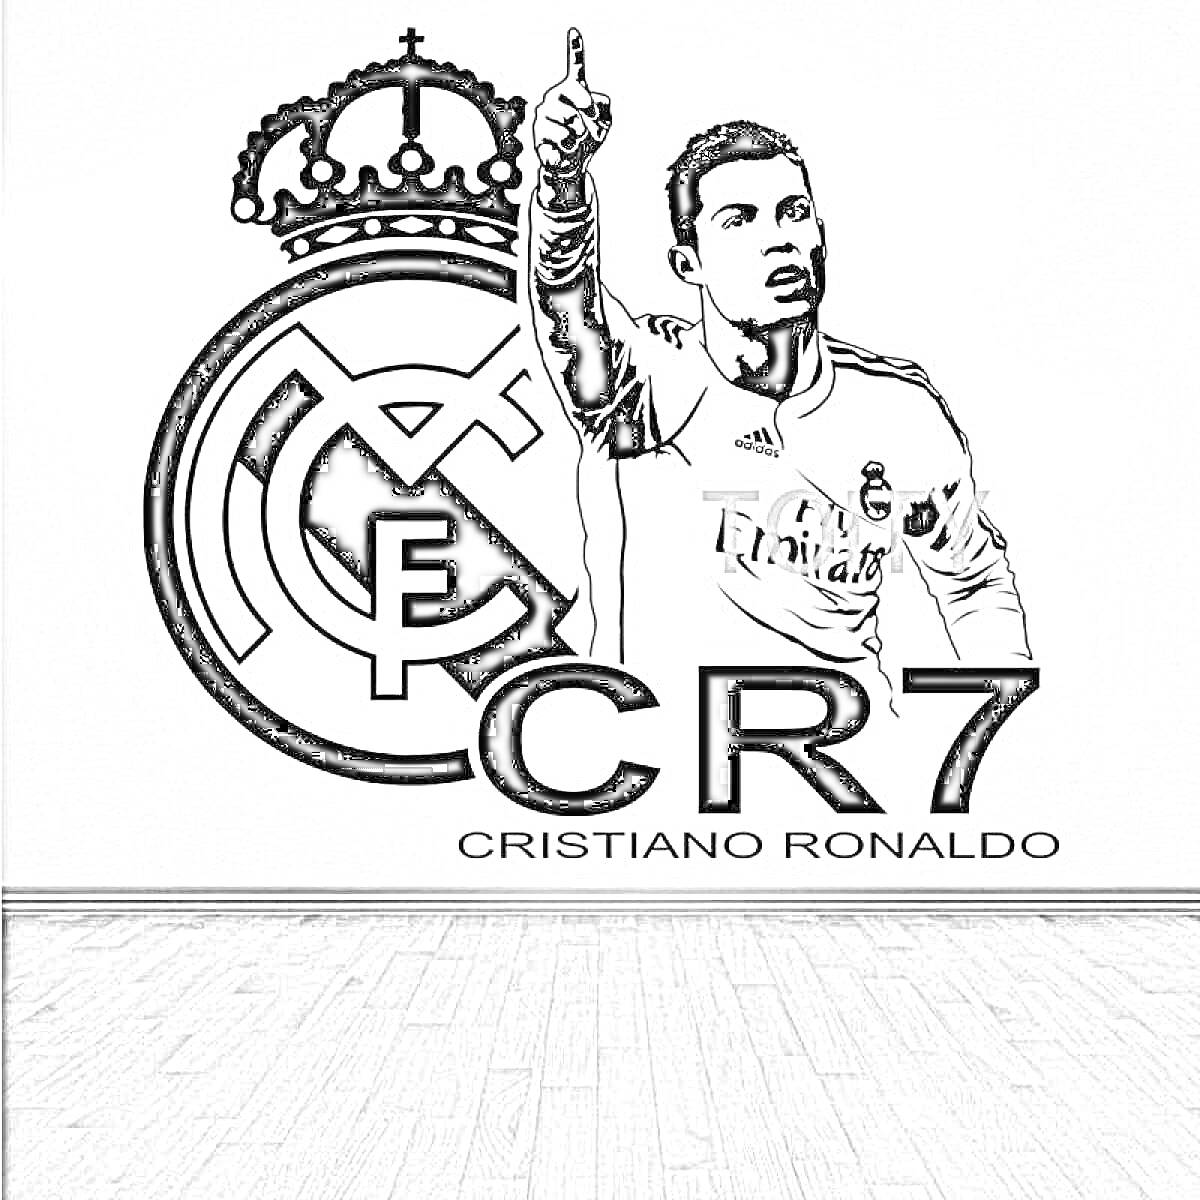 Криштиану Роналду в форме с поднятой вверх рукой рядом с эмблемой футбольного клуба «Реал Мадрид», надпись CR7 и Криштиану Роналду.